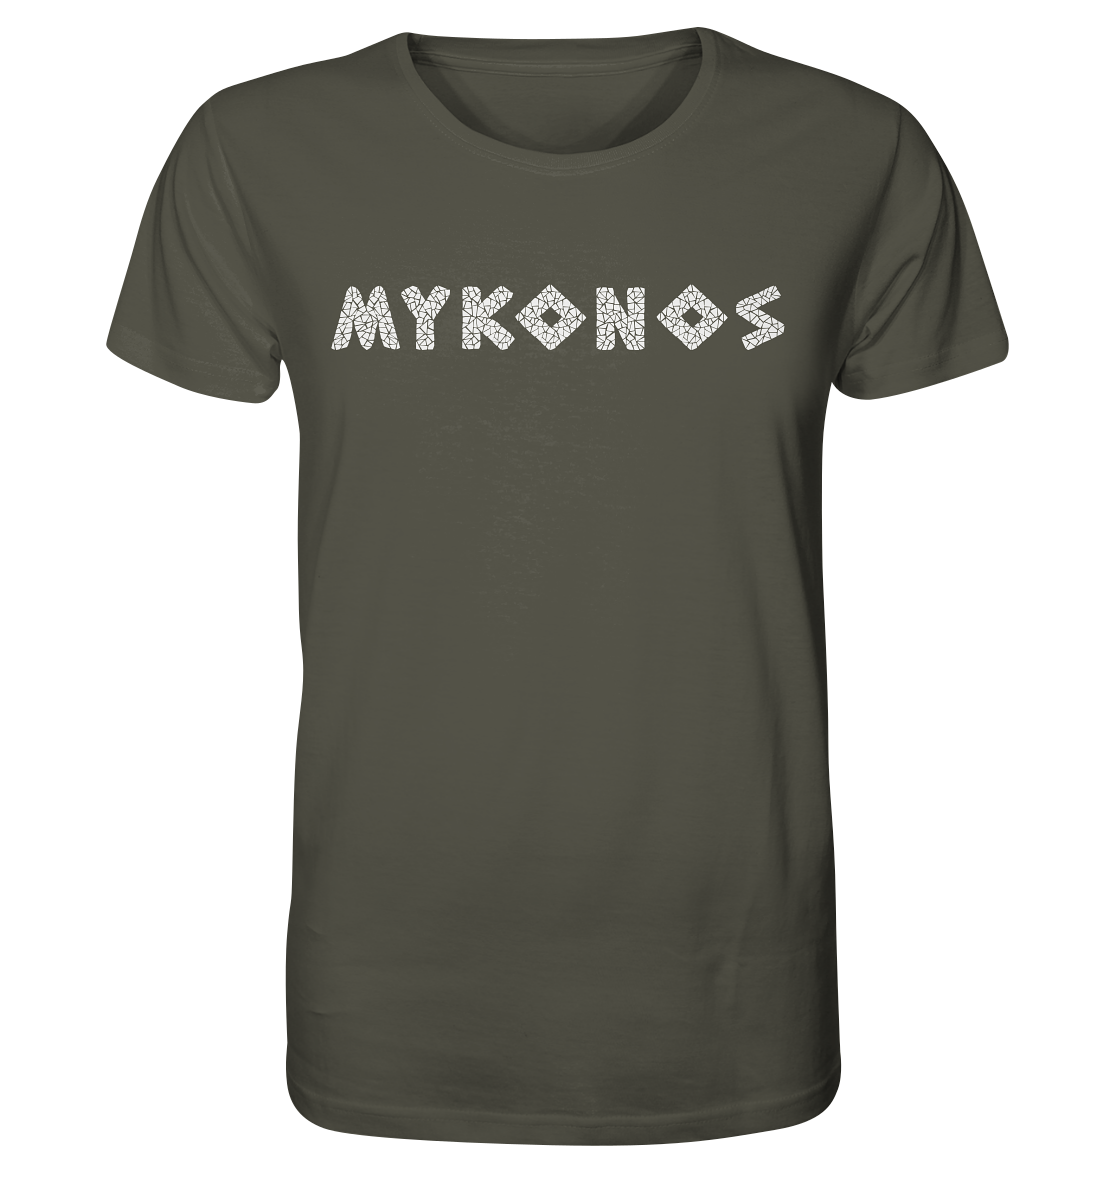 Mykonos Mosaik - Organic Shirt